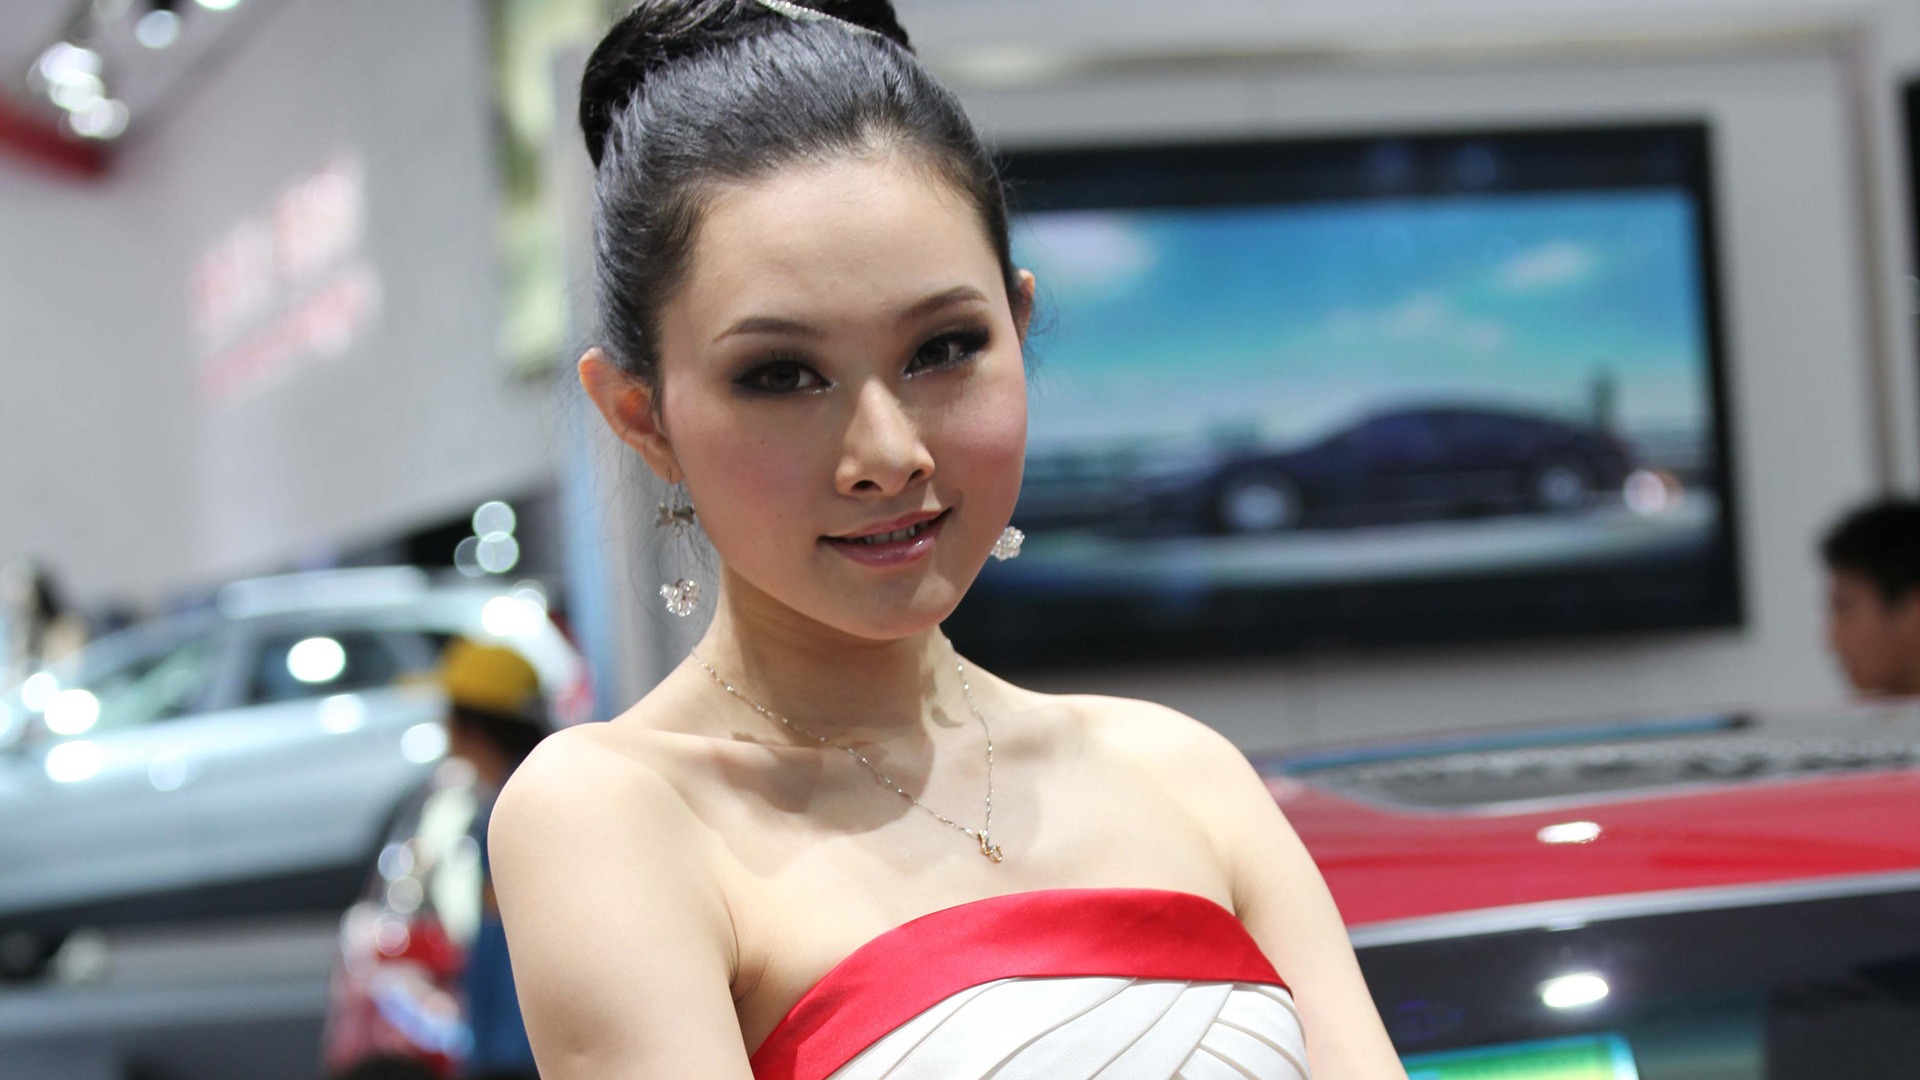 2010 Beijing International Auto Show de belleza (1) (el viento persiguiendo las nubes obras) #40 - 1920x1080